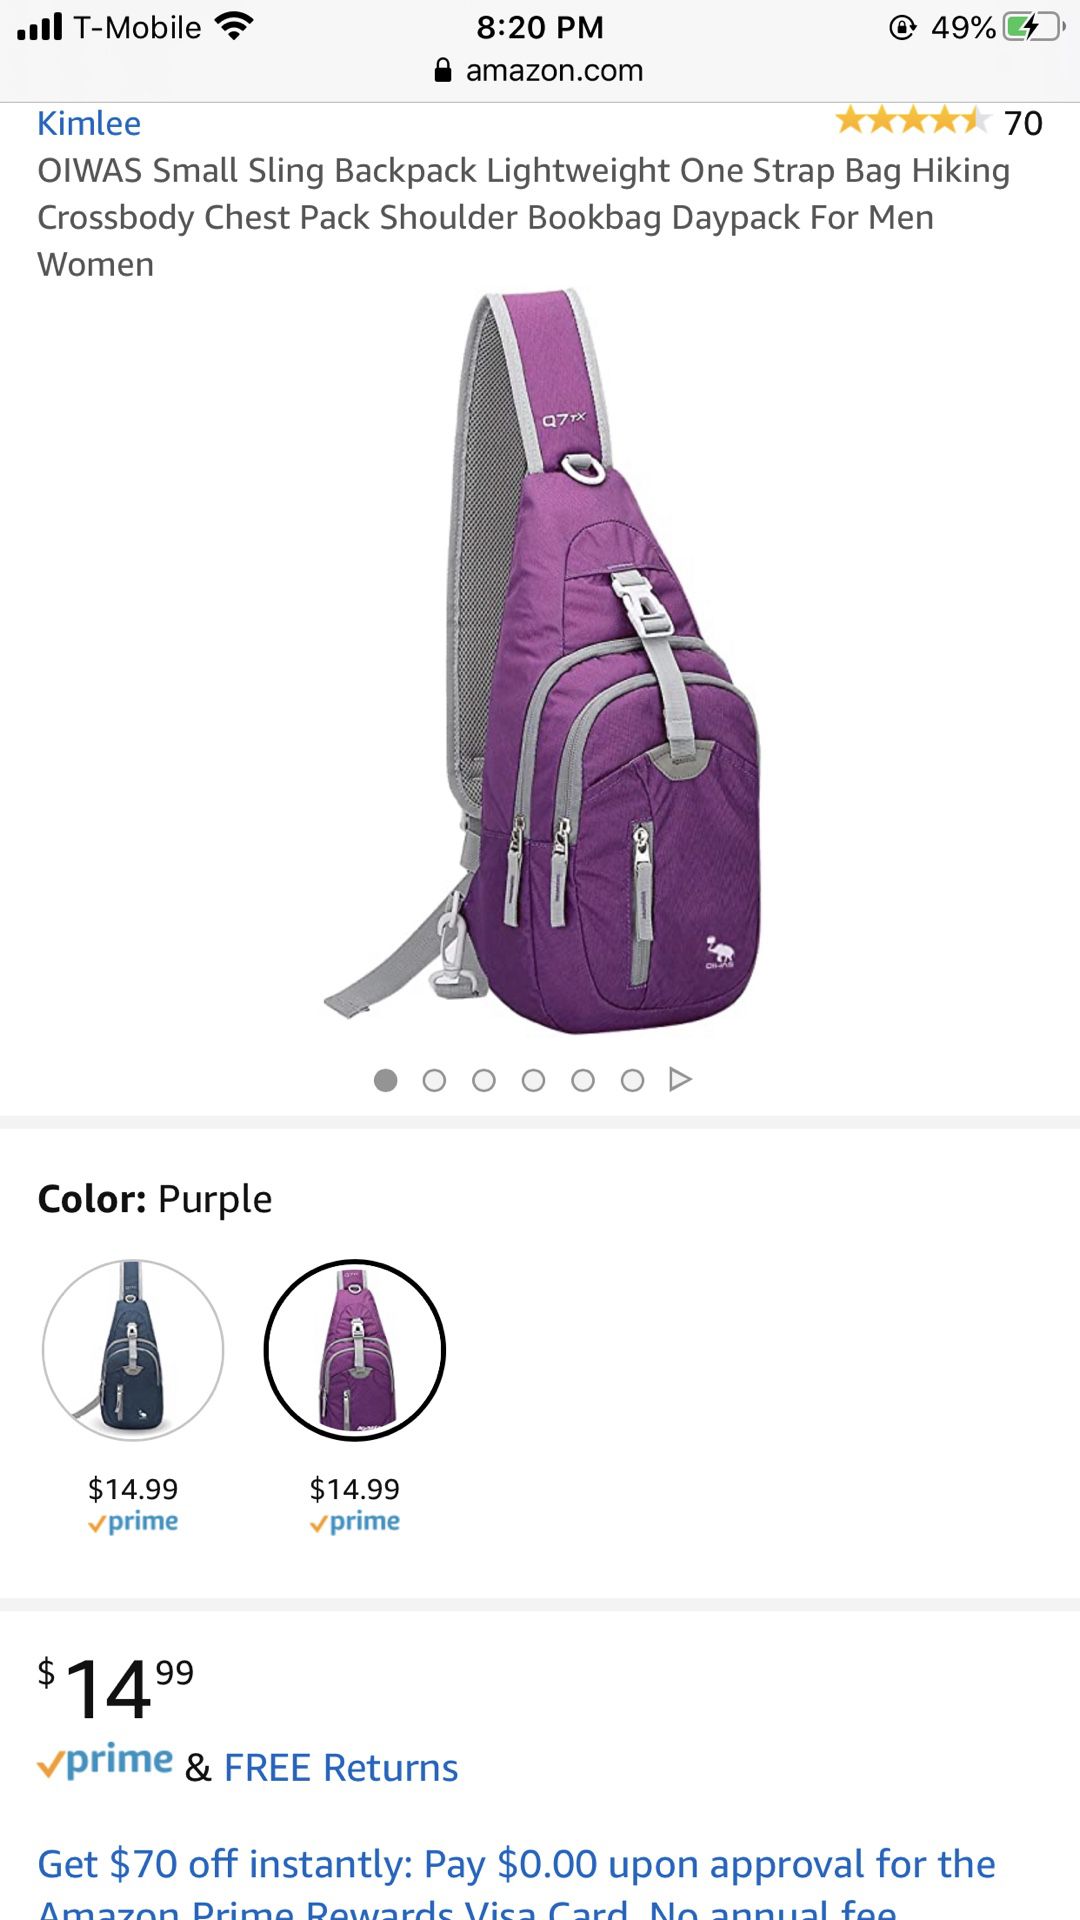 Small Sling Backpack Lightweight One Strap Bag Hiking Crossbody Chest Pack Shoulder Bookbag Daypack For Men Women